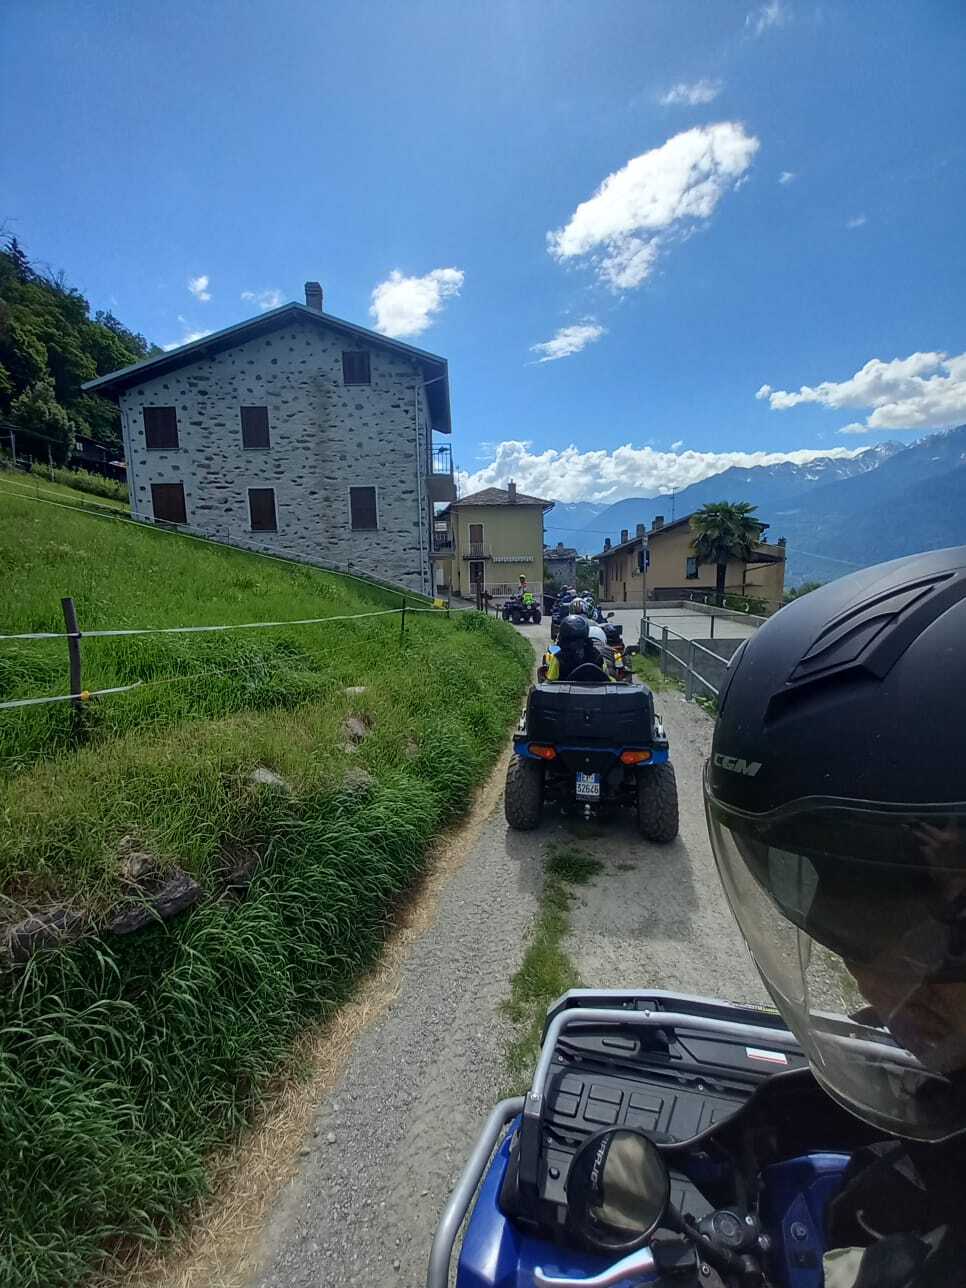 Quad & ATV Tour Valtellina 4x4   1709761752_import_11_1005465